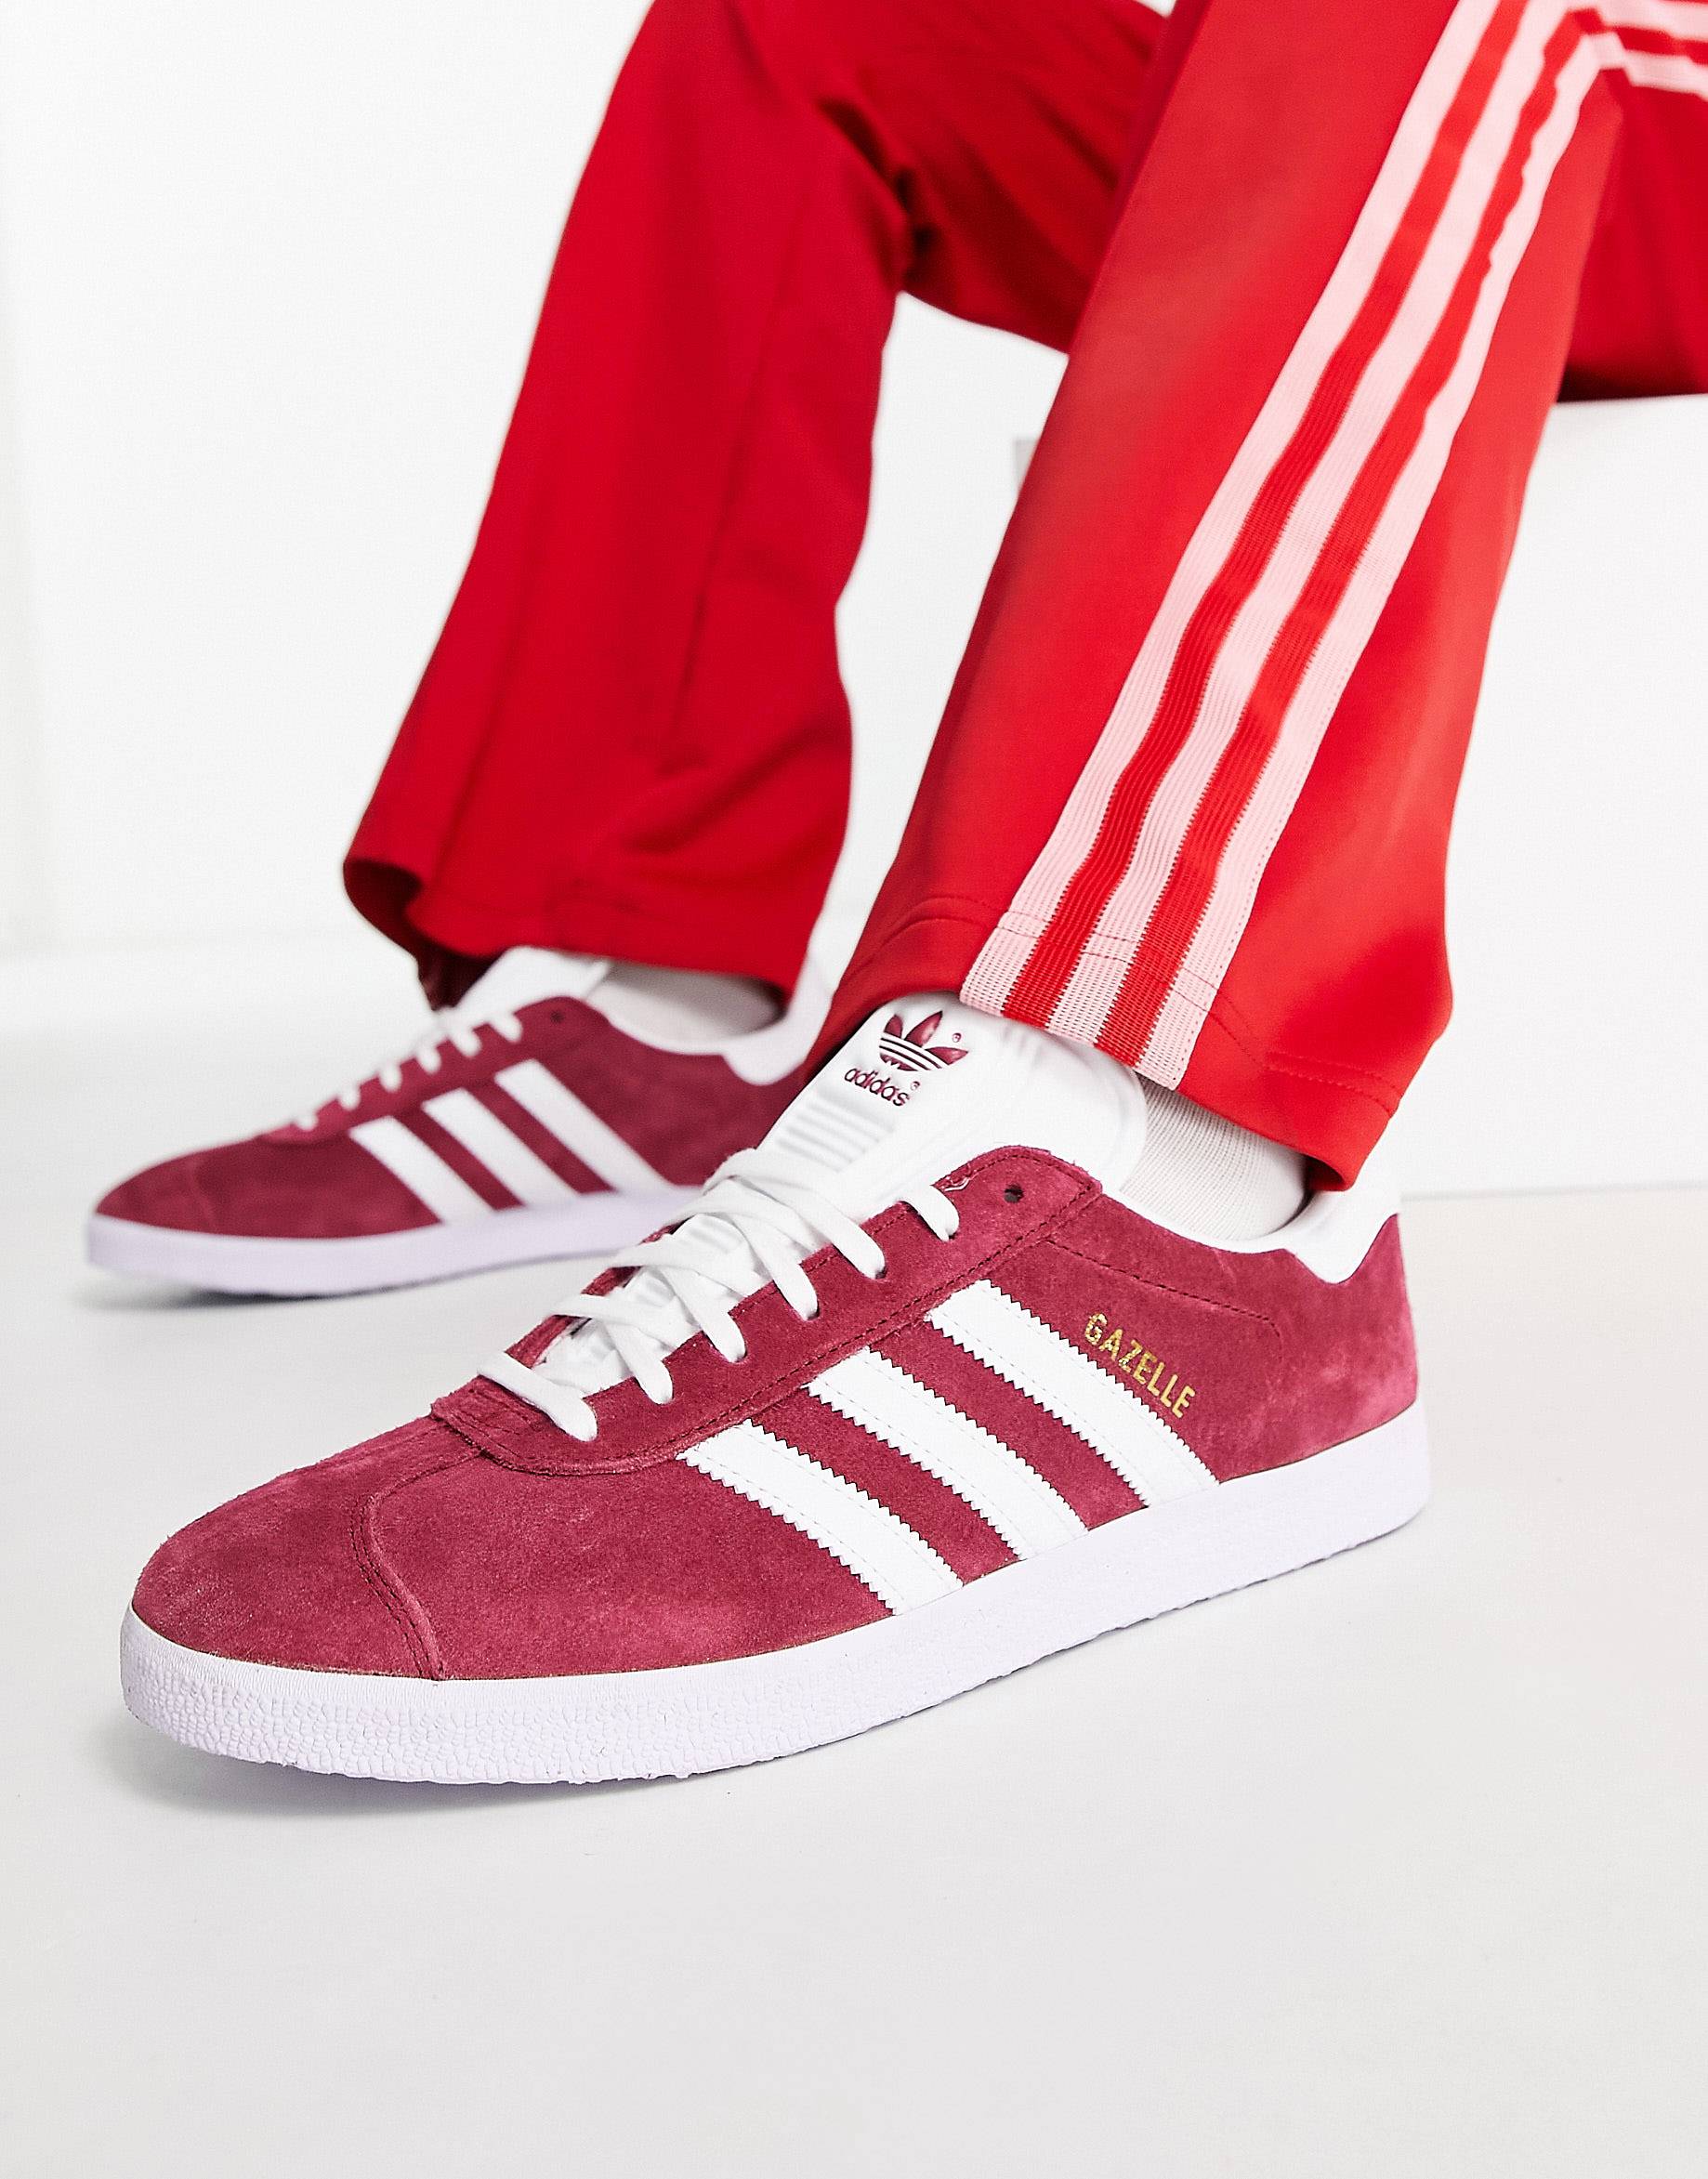 Кроссовки Adidas Originals Gazelle, красный кроссовки adidas originals gazelle цвета индиго и темно серого цвета